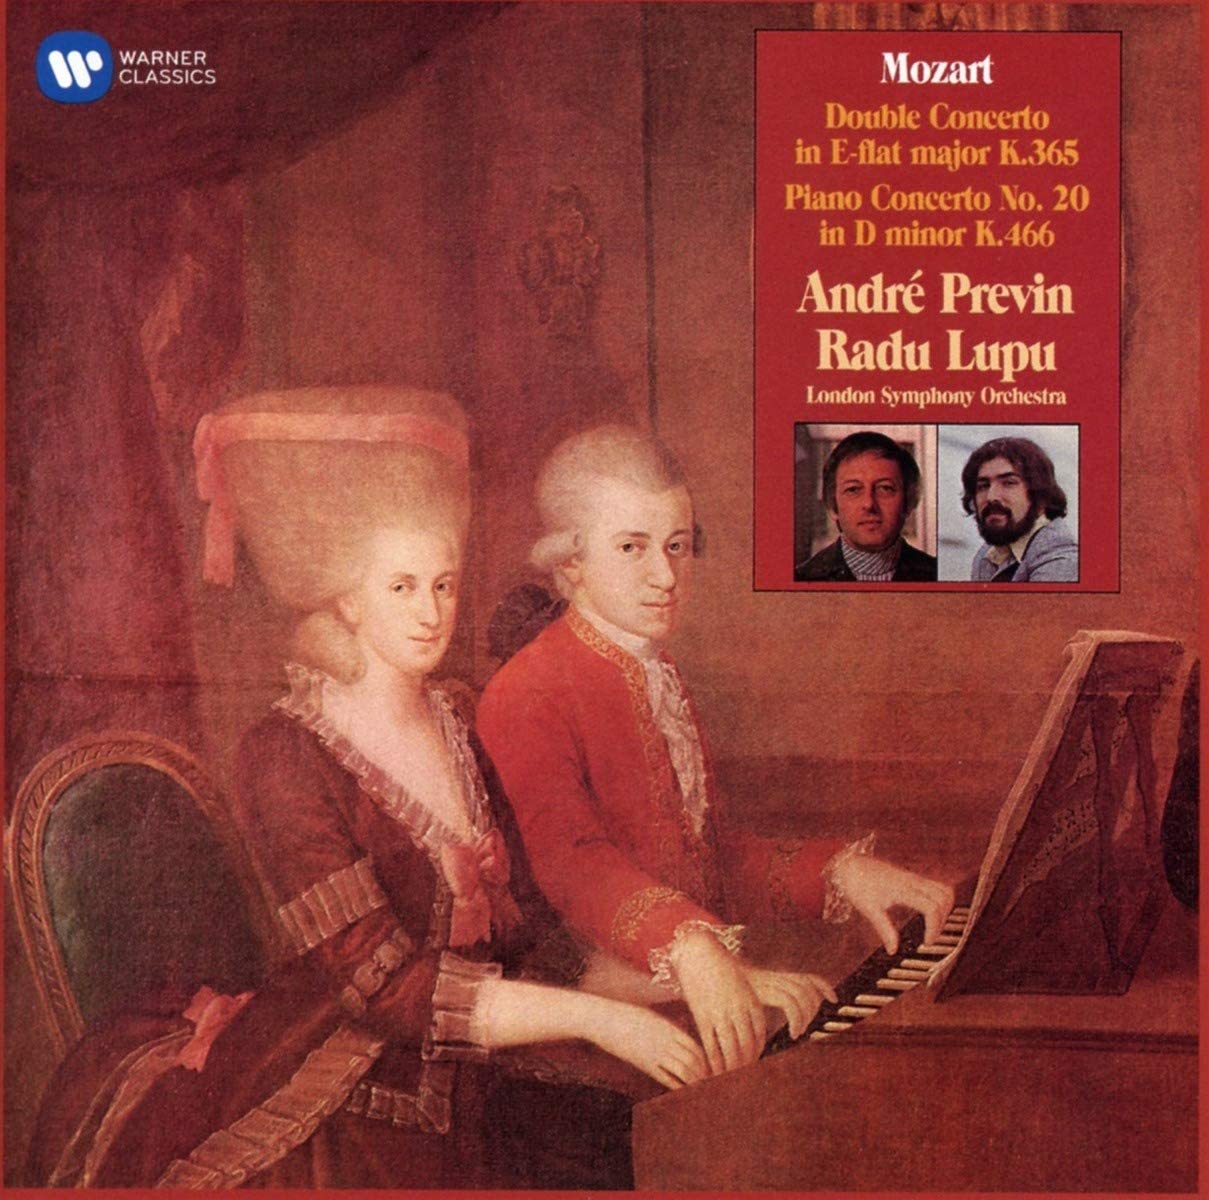 Mozart: Two-Piano Concerto K.365 & Piano Concerto K.466 | Andre Previn, Radu Lupu, London Symphony Orchestra